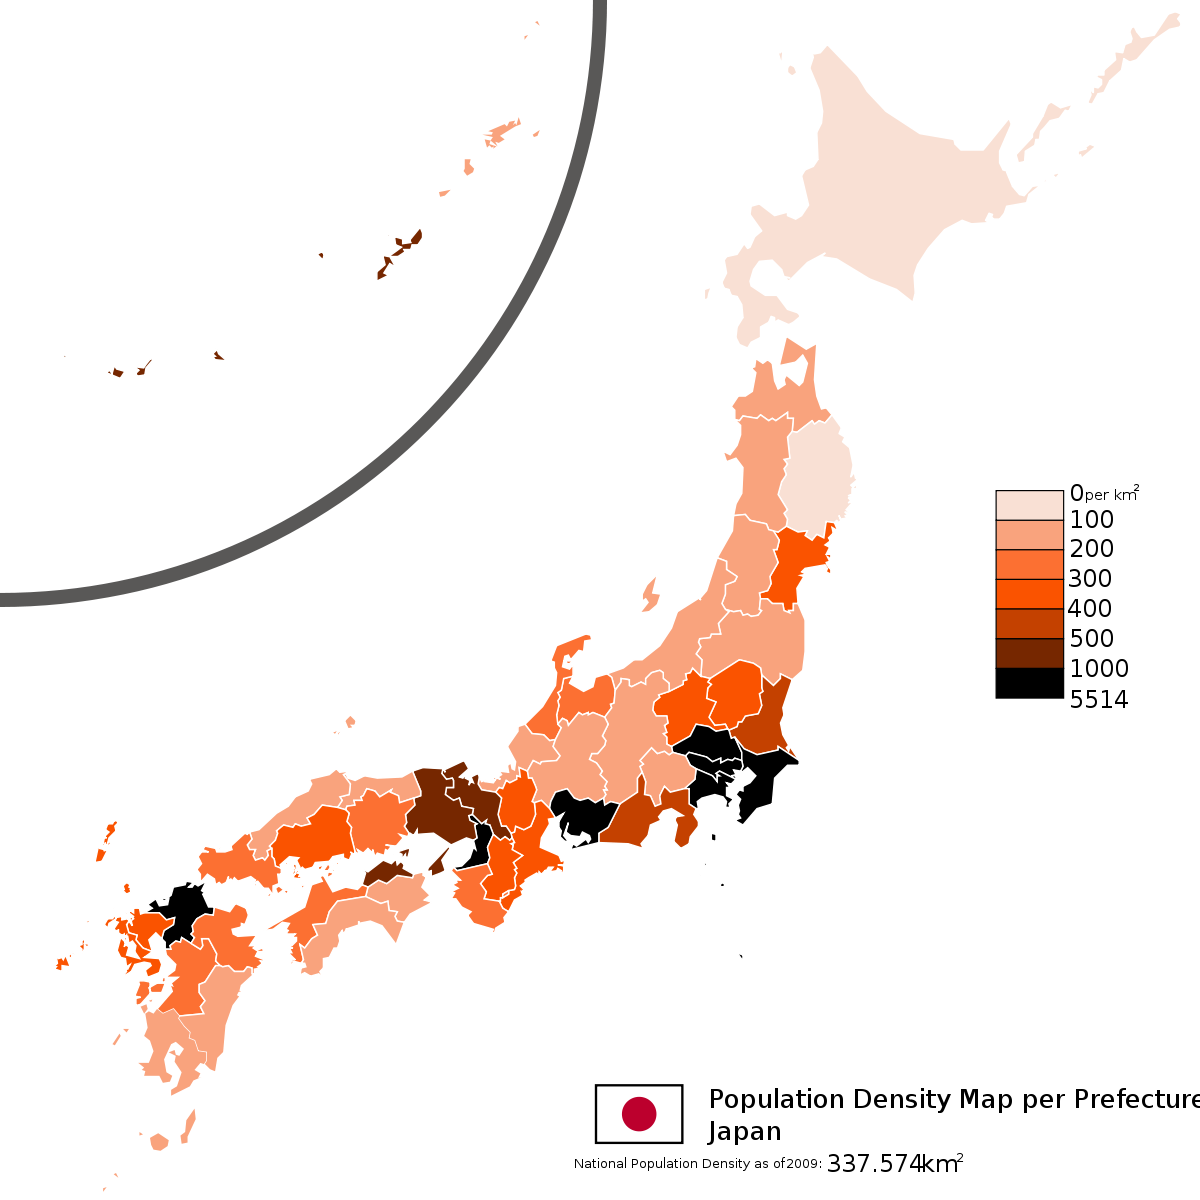 Population japan Population of